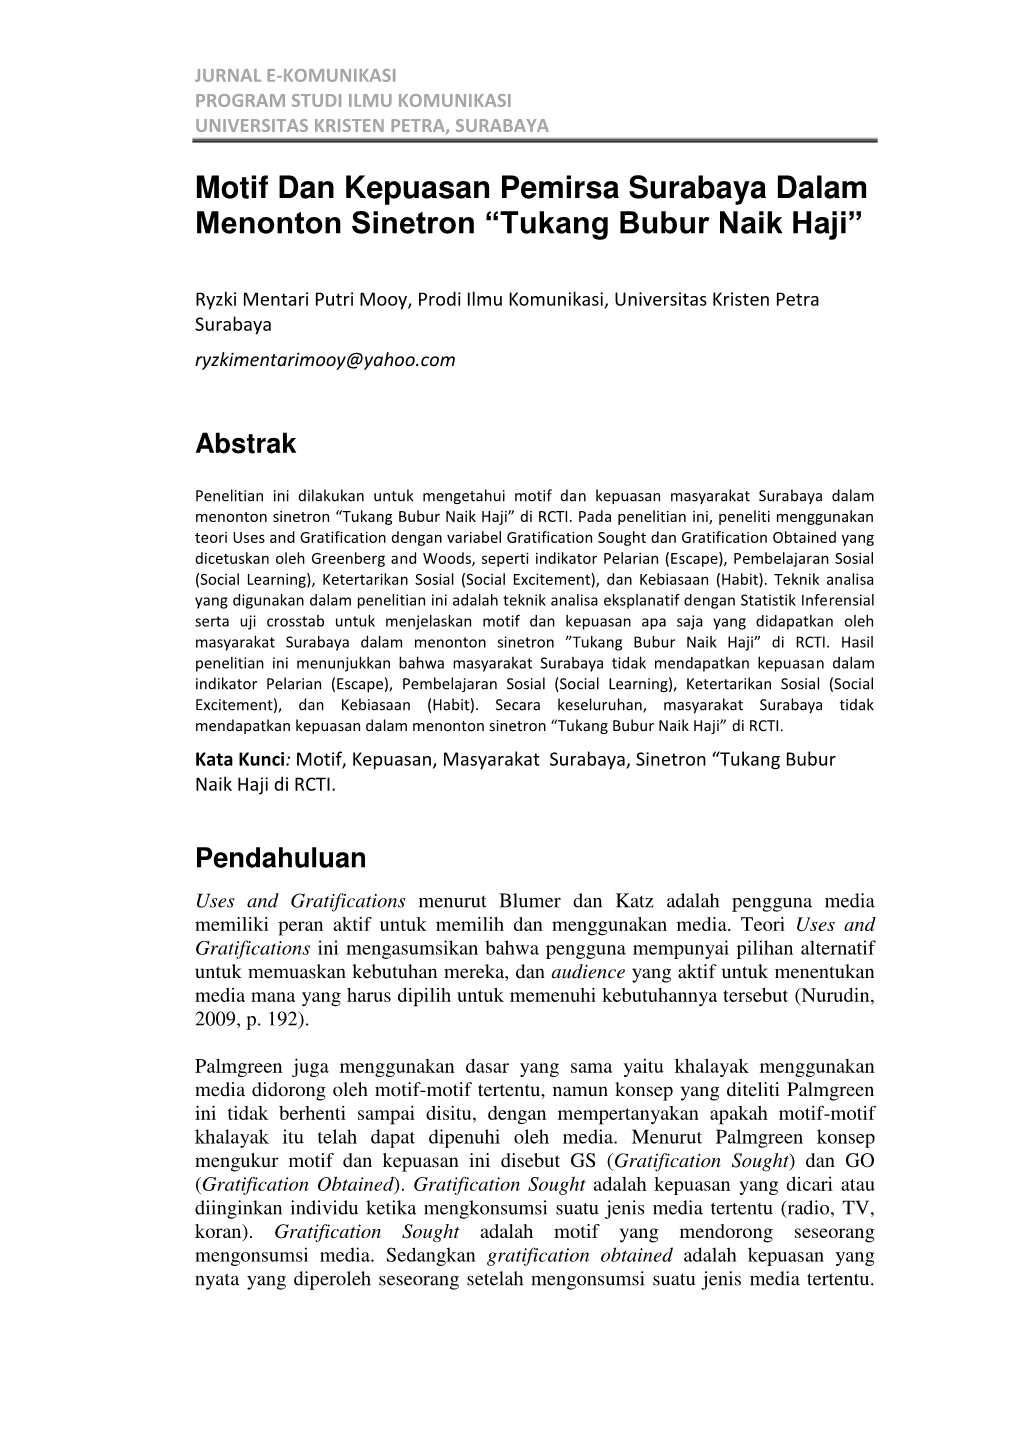 Motif Dan Kepuasan Pemirsa Surabaya Dalam Menonton Sinetron “Tukang Bubur Naik Haji”